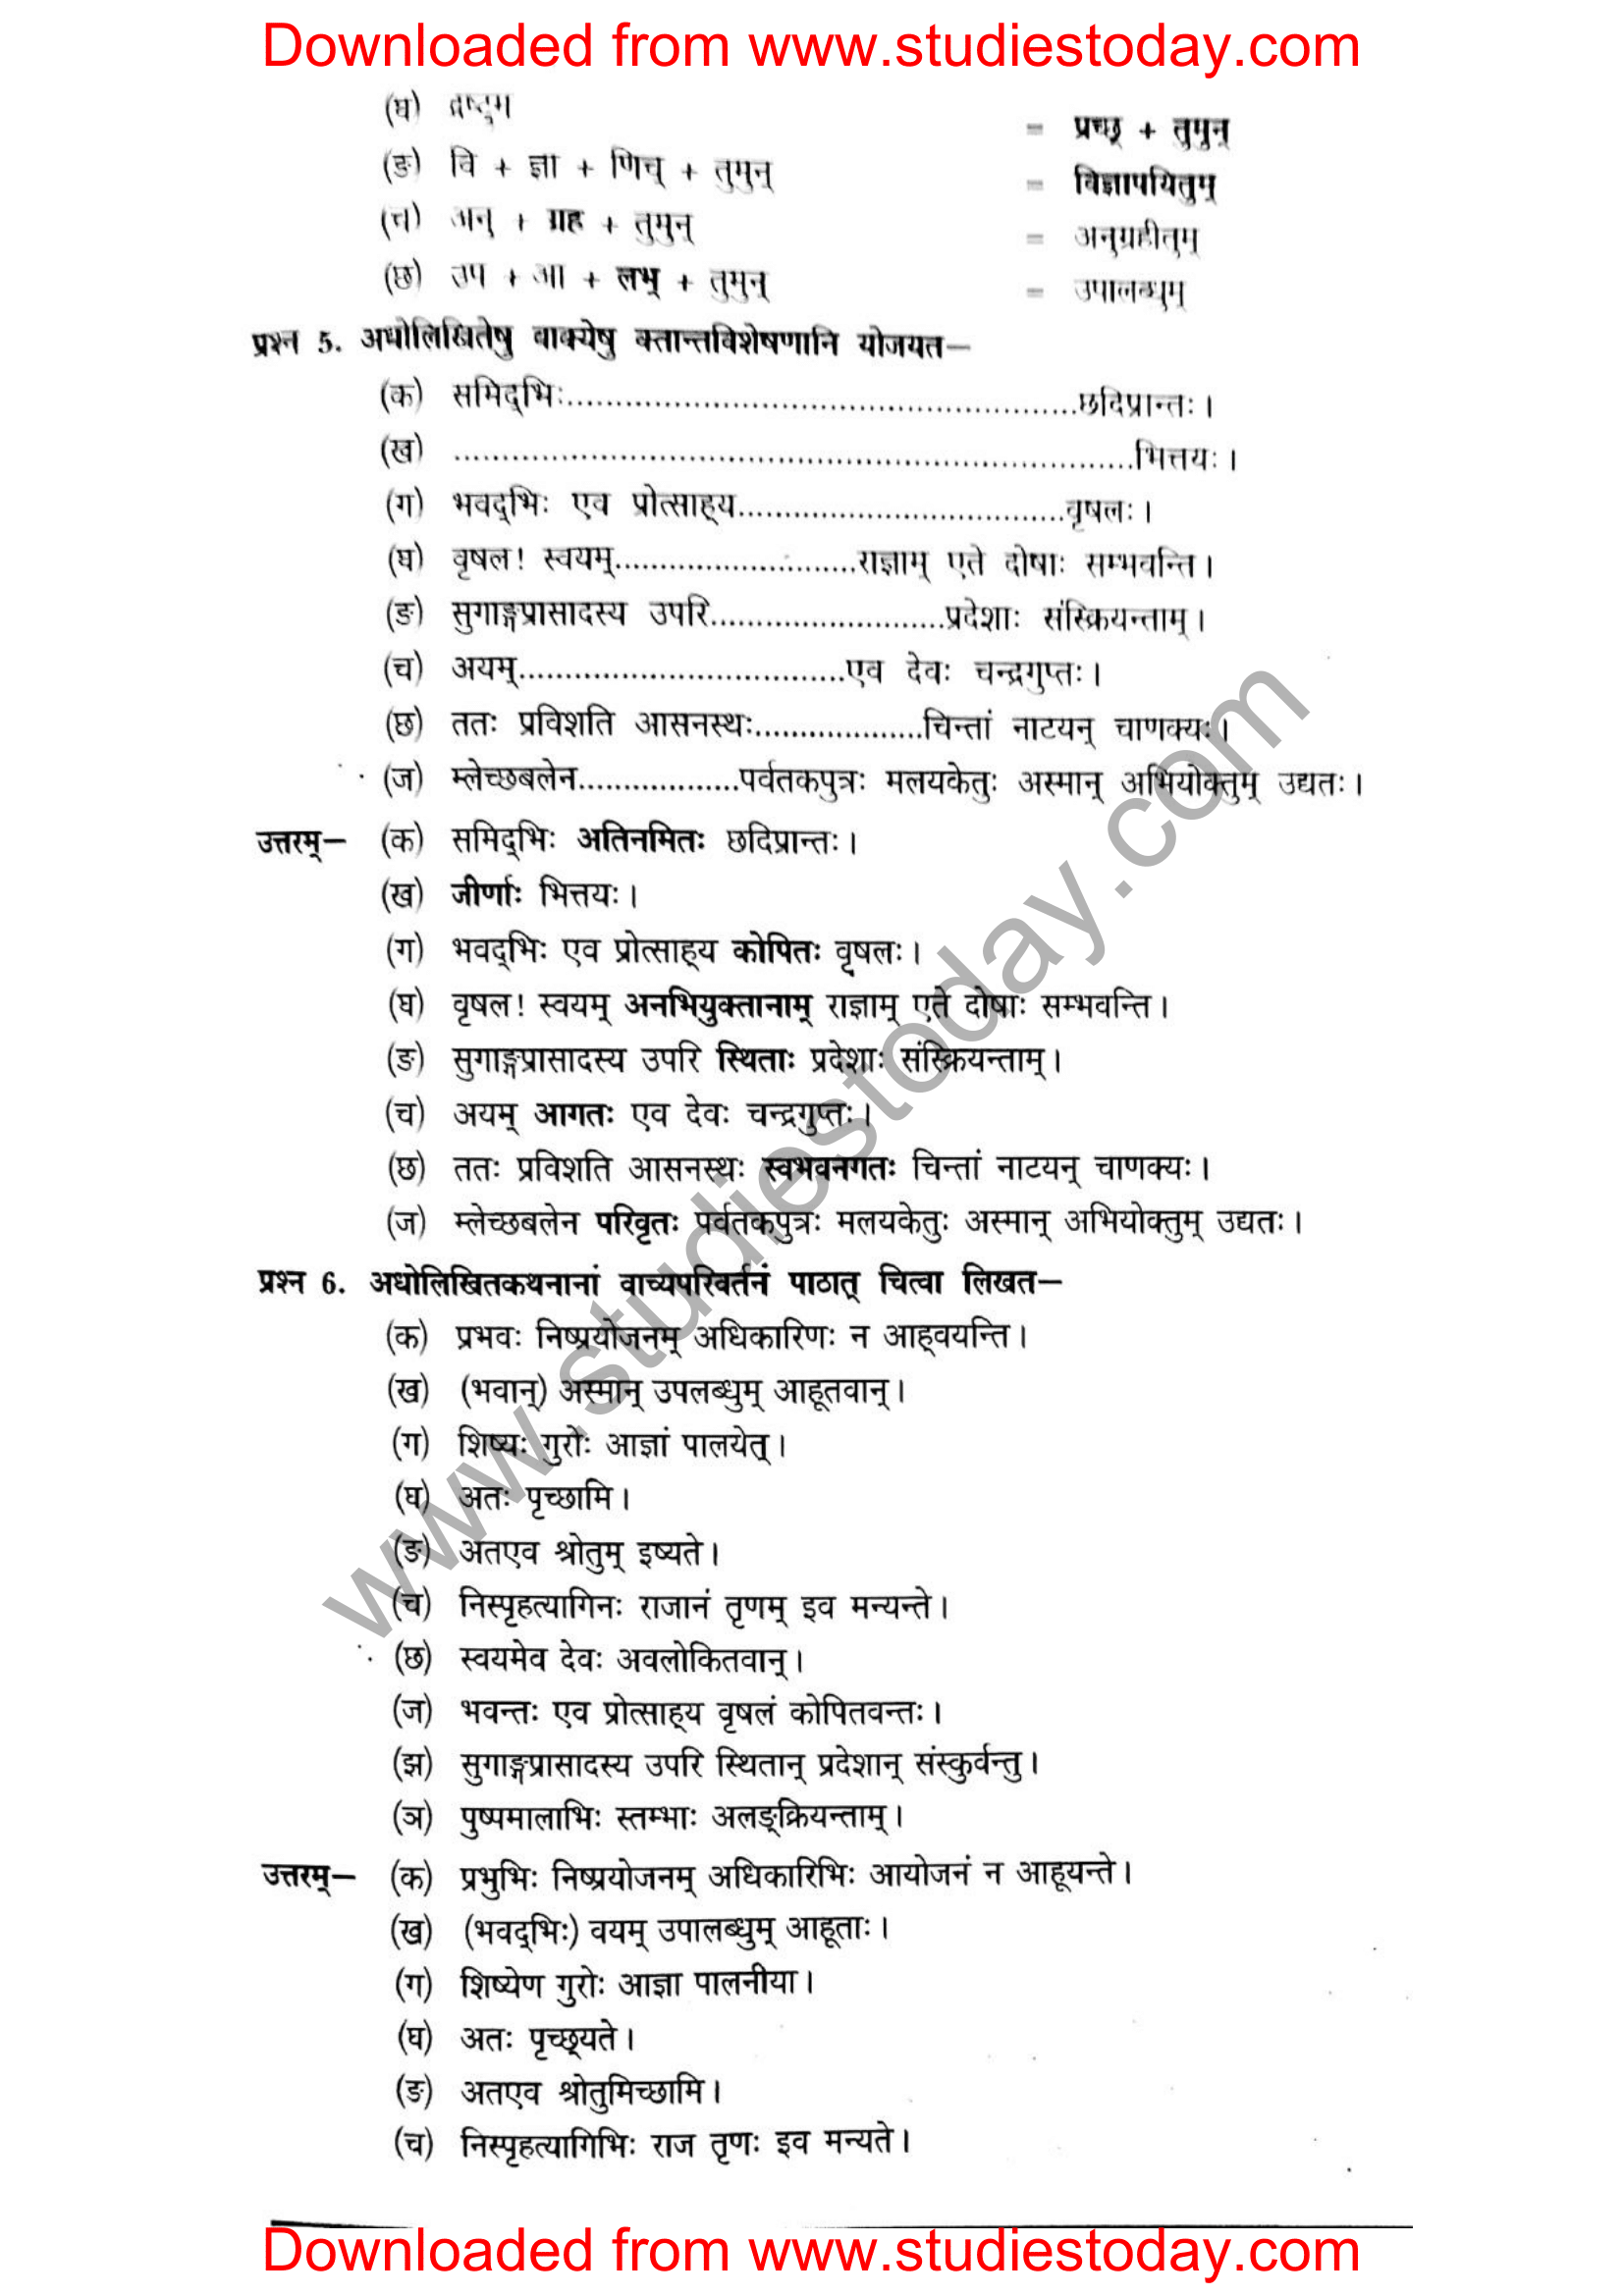 ncert-solutions-class-12-sanskrit-ritikia-chapter-3-11